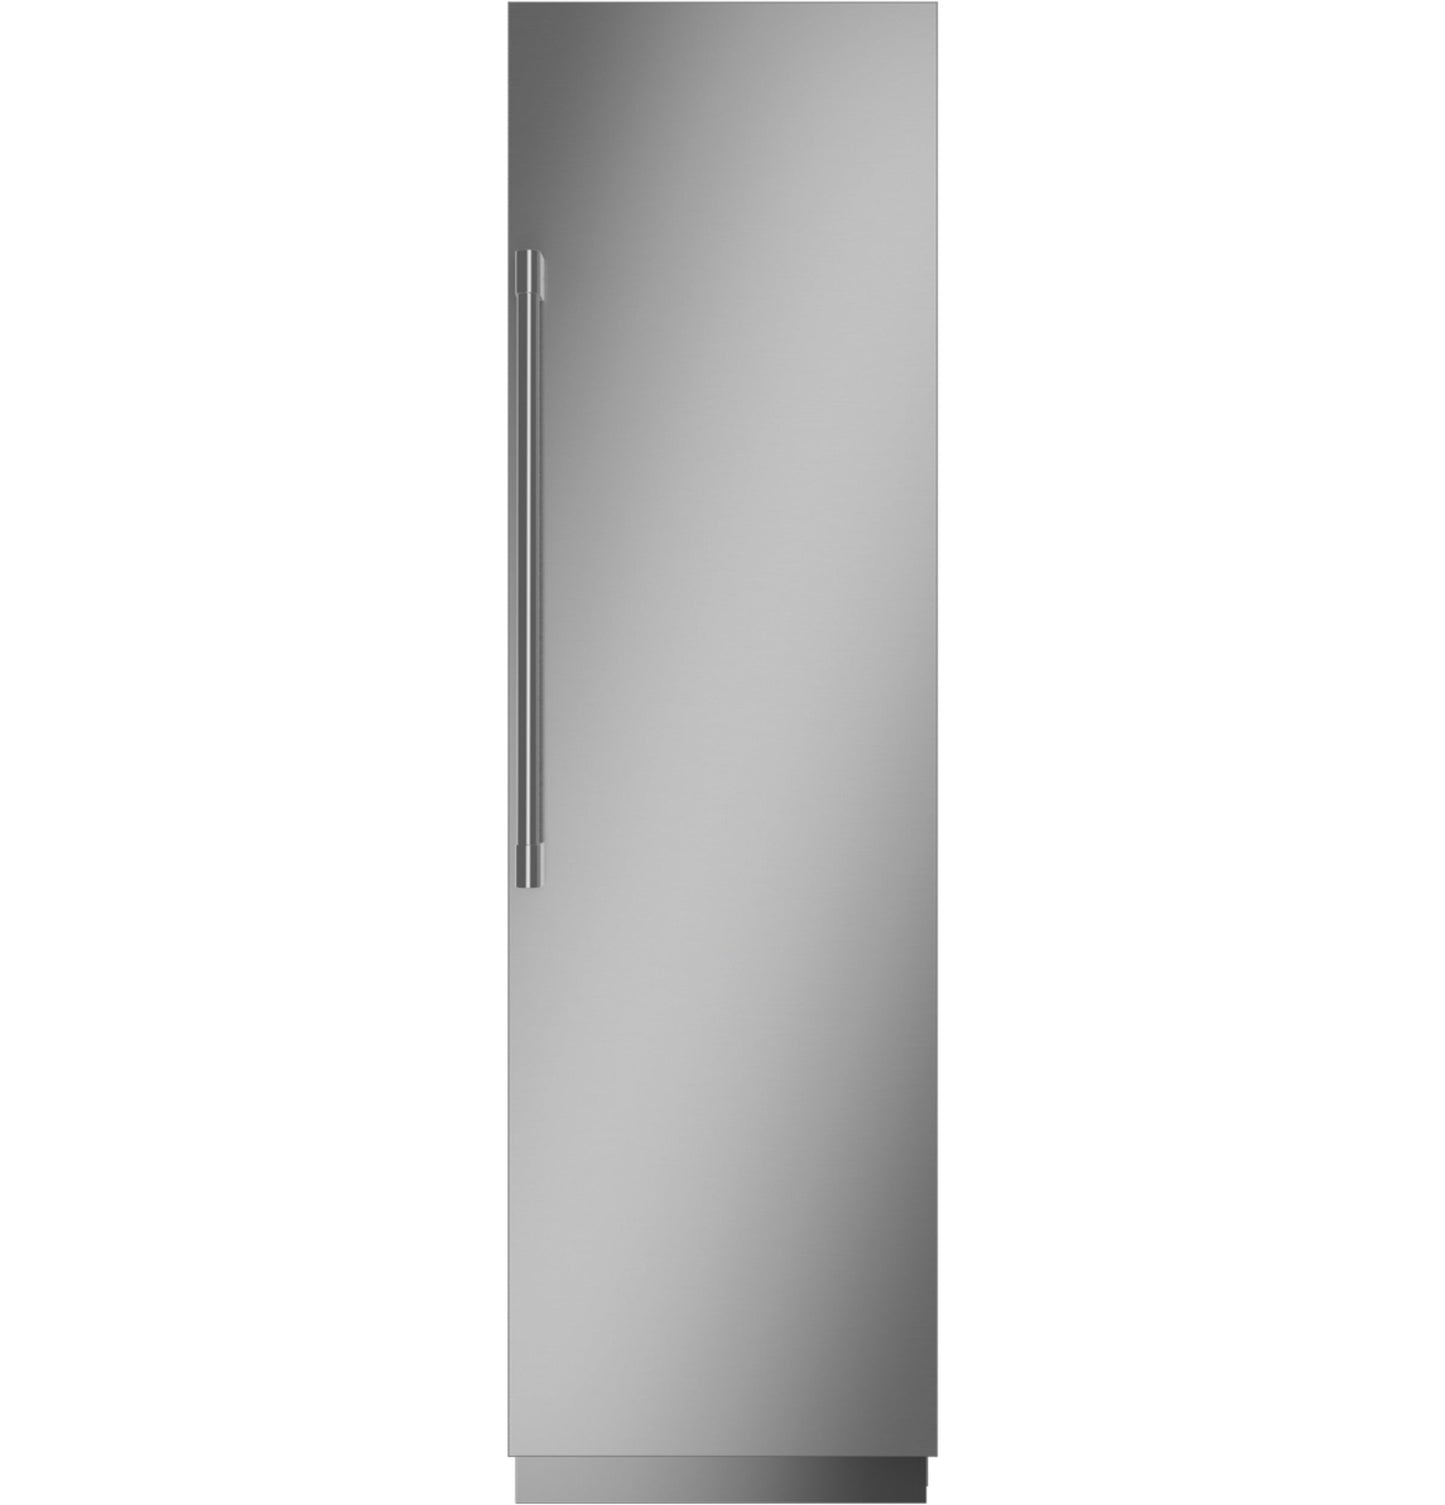 Monogram 24" Fully Integrated Column Refrigerator - ZIR241NPNII